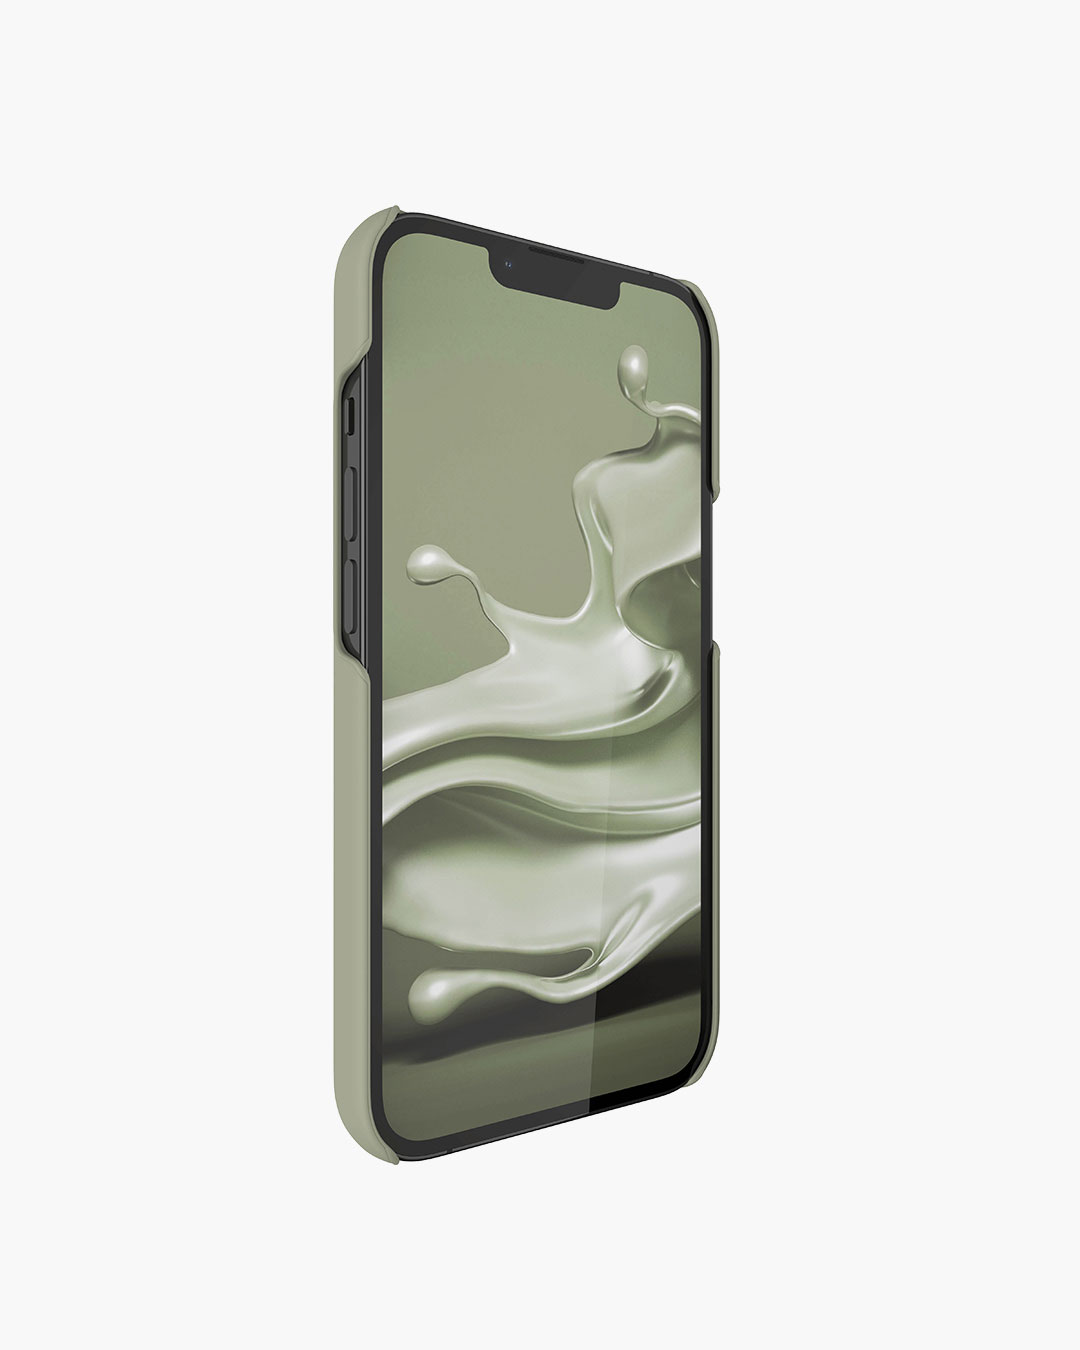 Fresh 'n Rebel - Phone Case iPhone 13 Pro - Dried Green